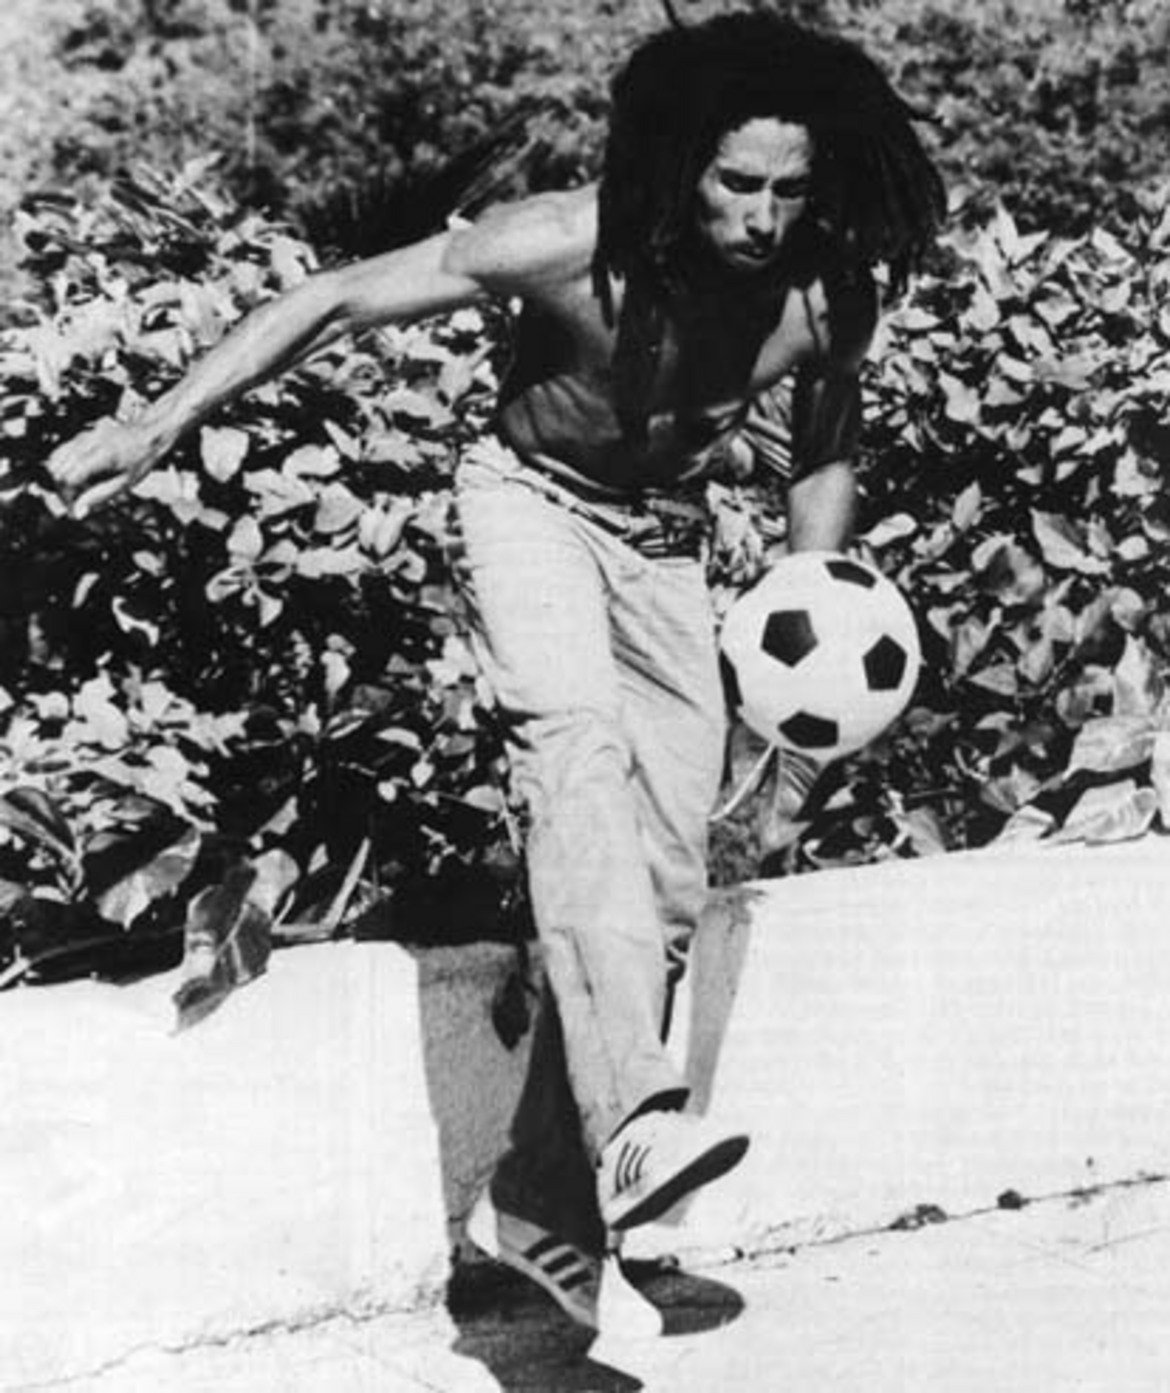 Боб Марли
Наскоро ви разказахме историята на Марли. "Боб беше голям футболист - спомня си продуцентът Лий Пери. - По време на турнетата винаги носеше топка със себе си и я вадеше във всяка свободна минута, която имаше. Ако не беше такъв музикант, със сигурност щеше да играе за някой ямайски отбор".